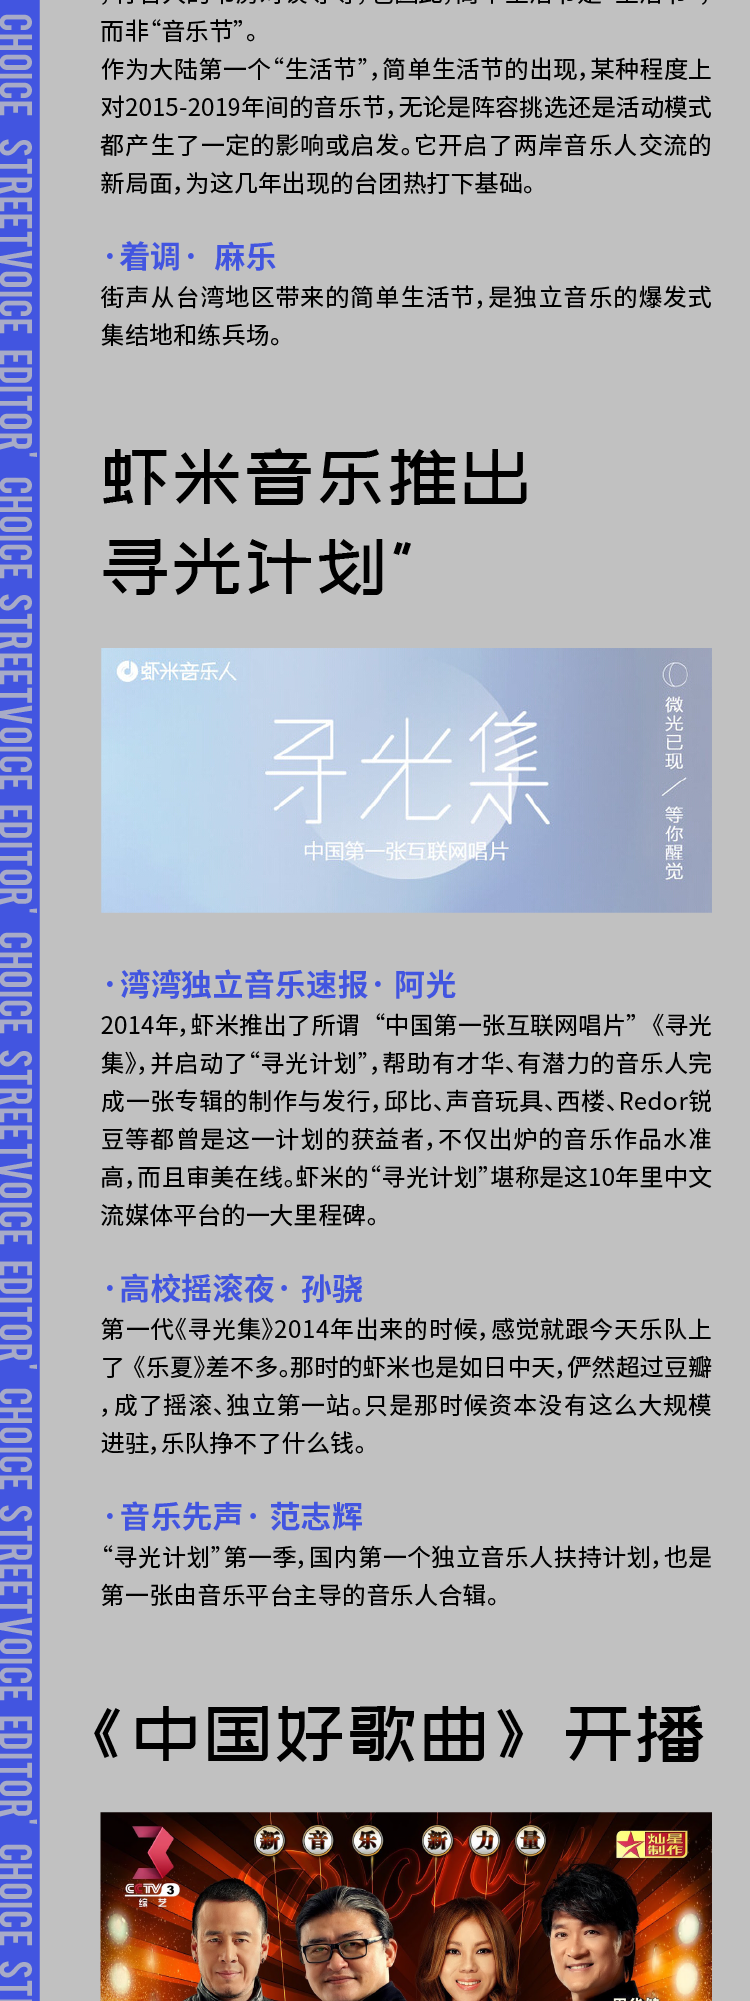 一张图带你回顾过去10年华语独立音乐 家青年文化媒体的选择 大事 街声 Streetvoice 原创音乐资讯平台